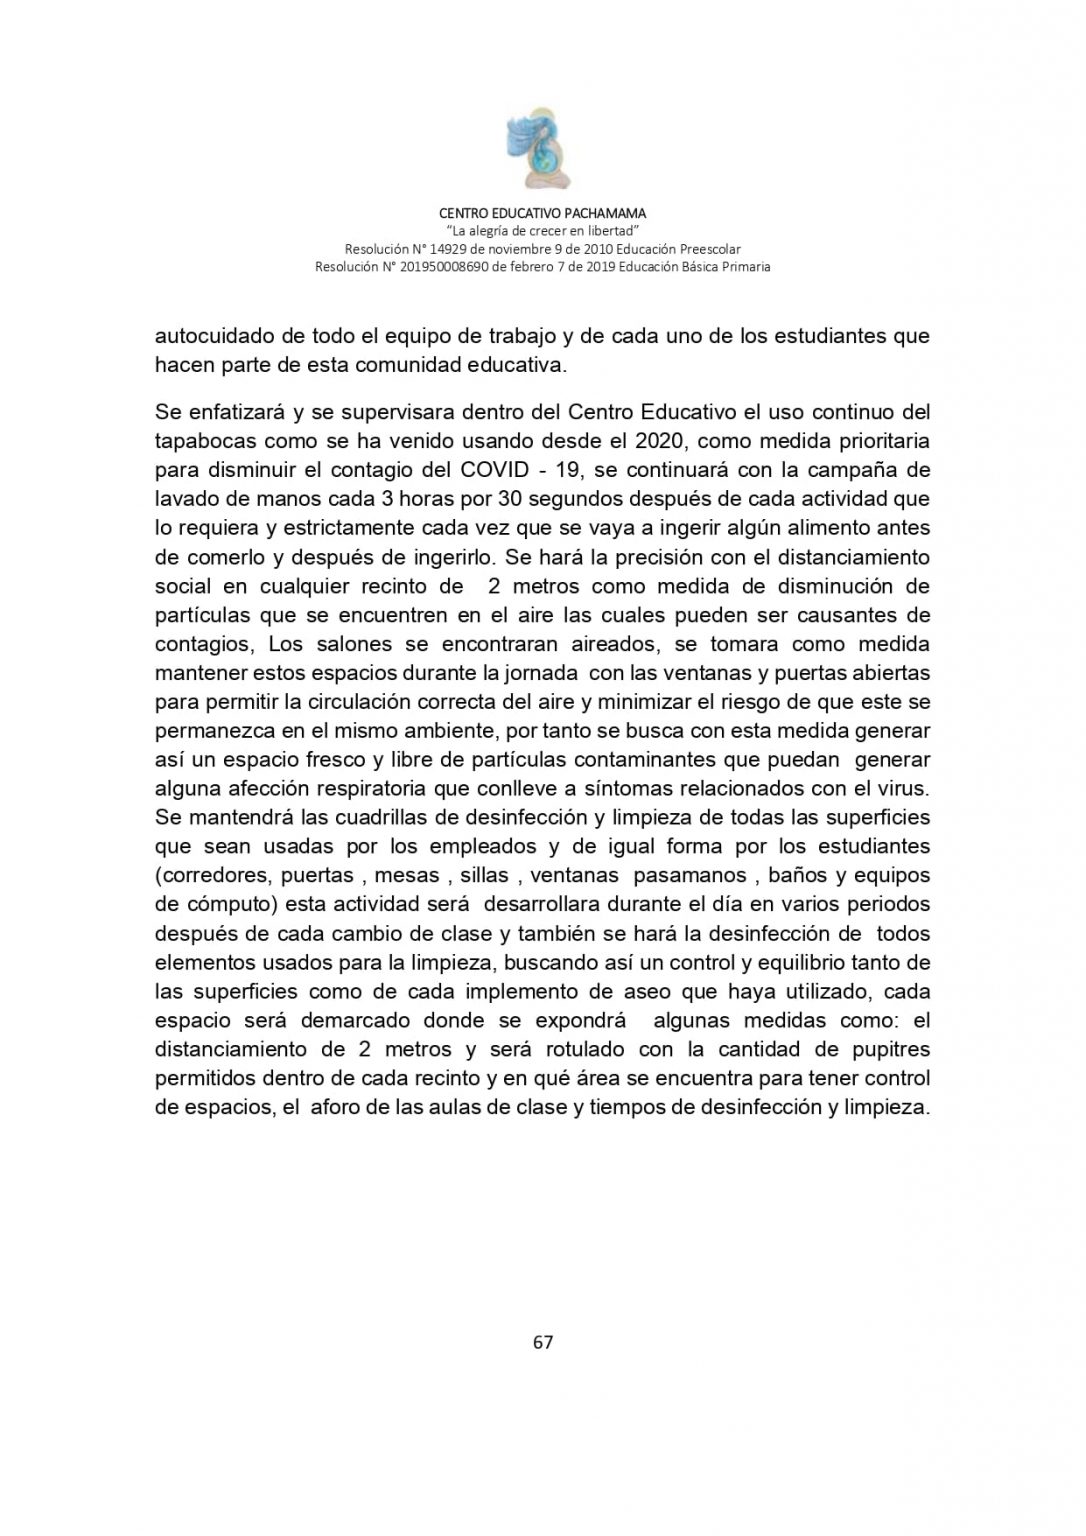 PROTOCOLO DE BIOSEGURIDAD PACHAMAMA Última Versión (3)-convertido_page-0067